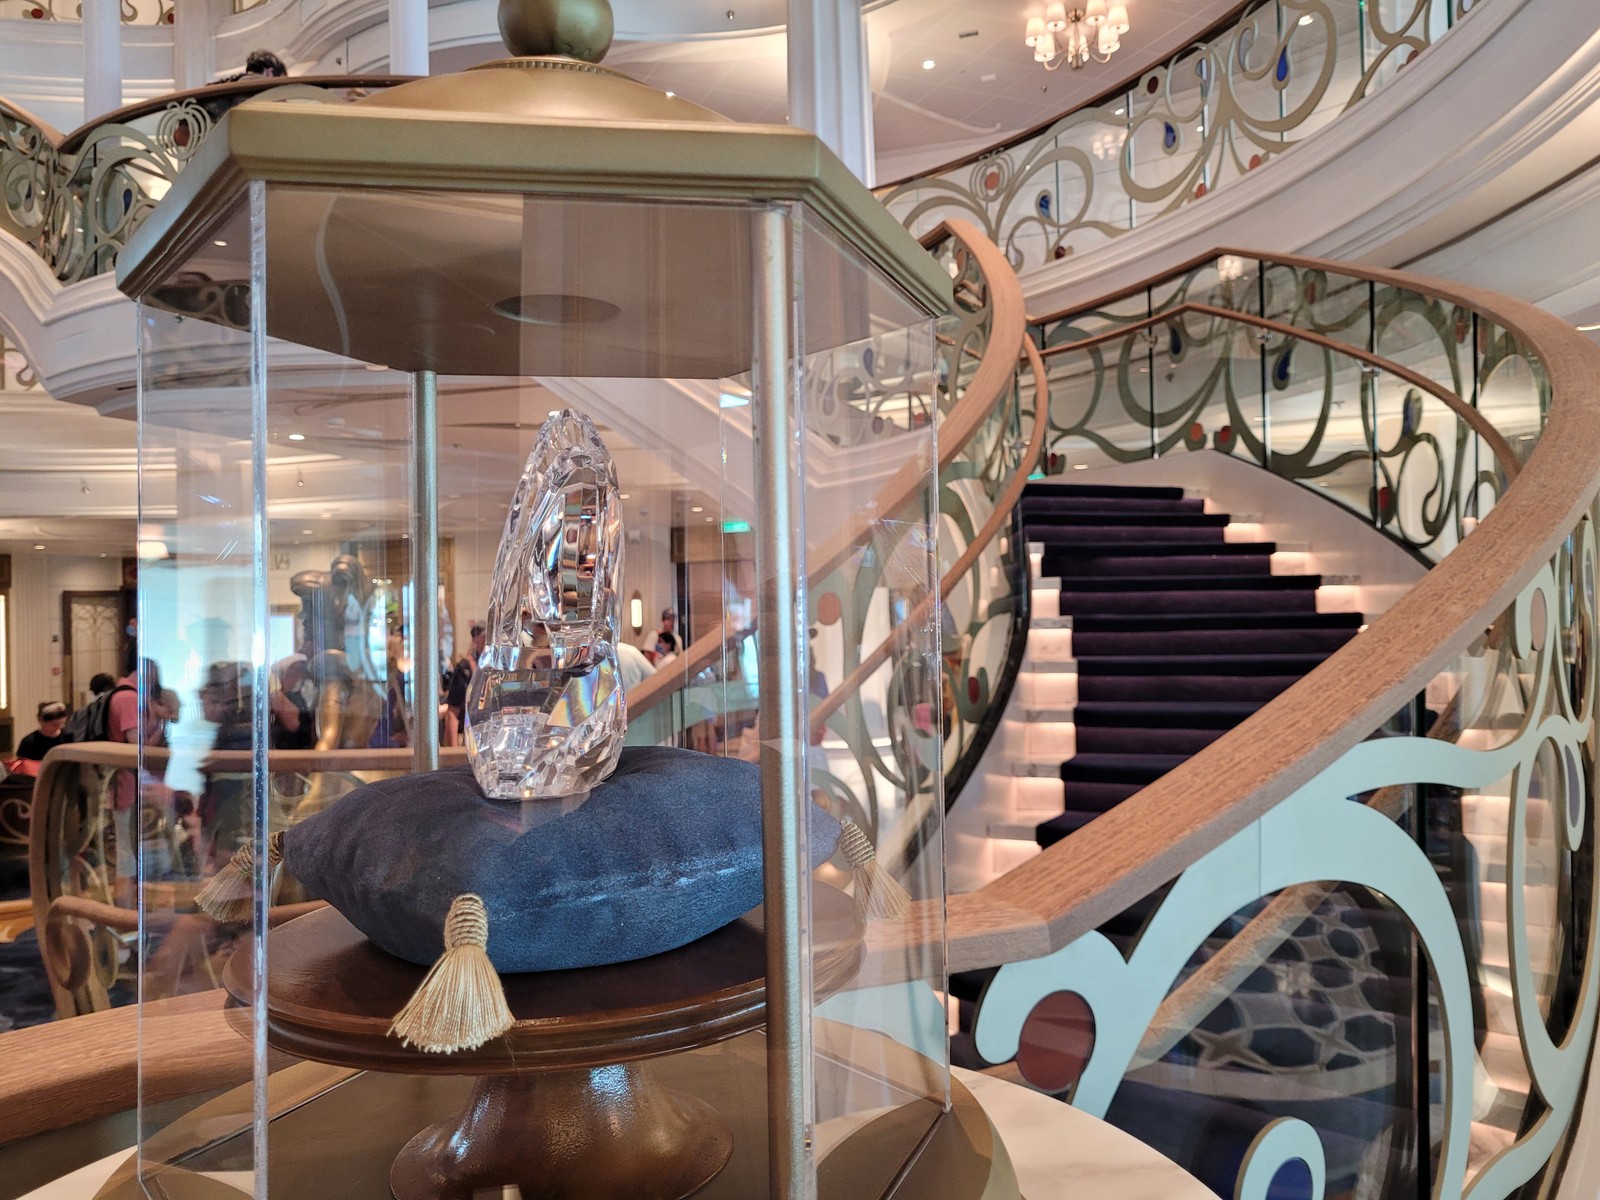 Detalhe no Grand Hall: o sapatinho de cristal de Ciderela ao lado da escadaria